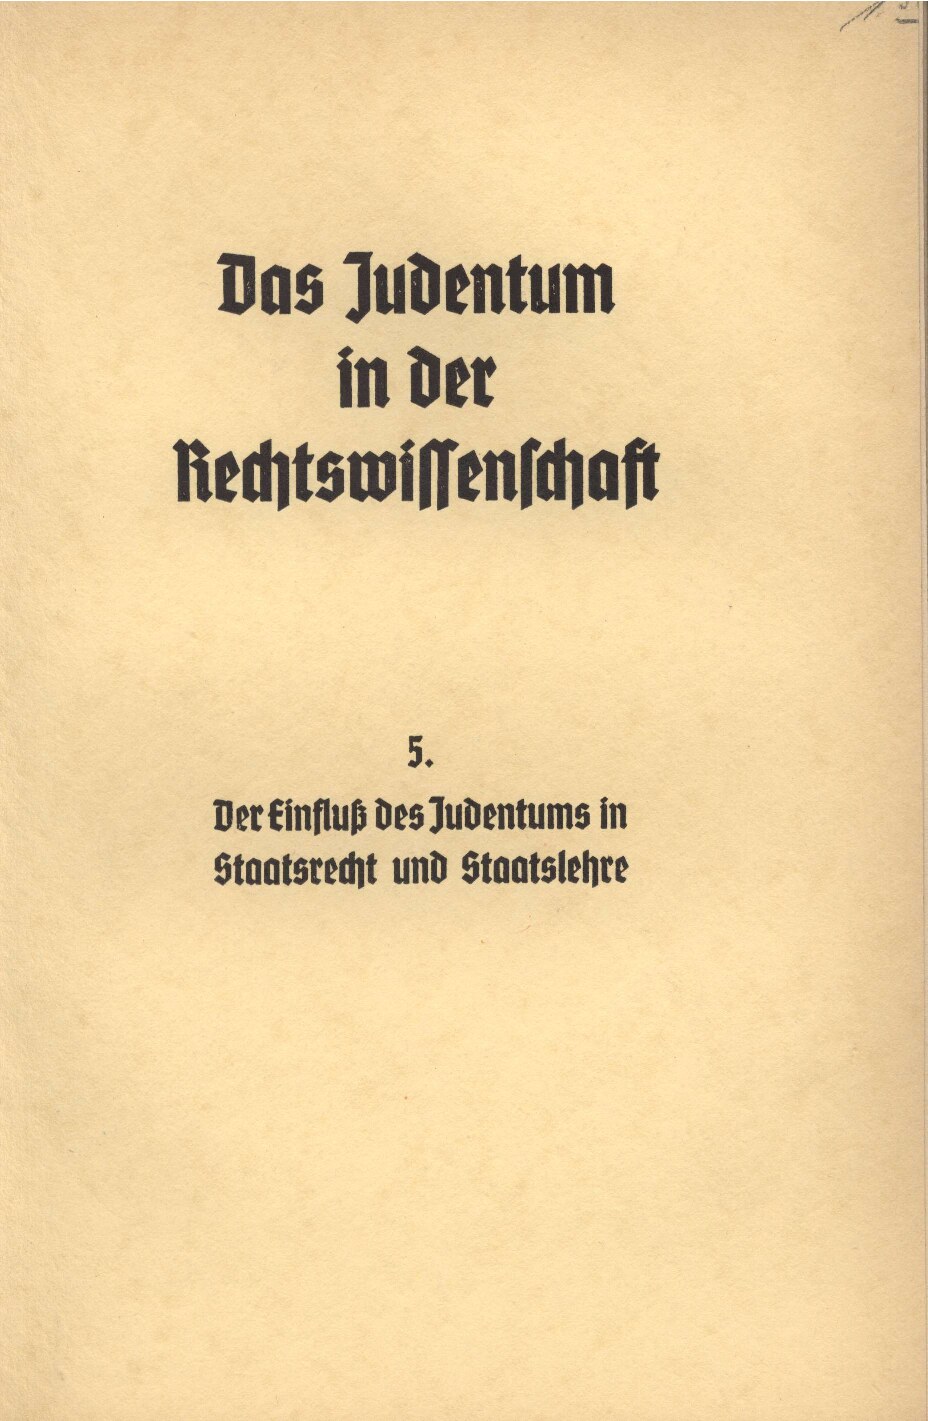 Das Judentum in der Rechtswissenschaft - 5. - Der Einfluss des Judentums in Staatsrecht und Staatslehre (1938, 40 S., Scan, Fraktur)